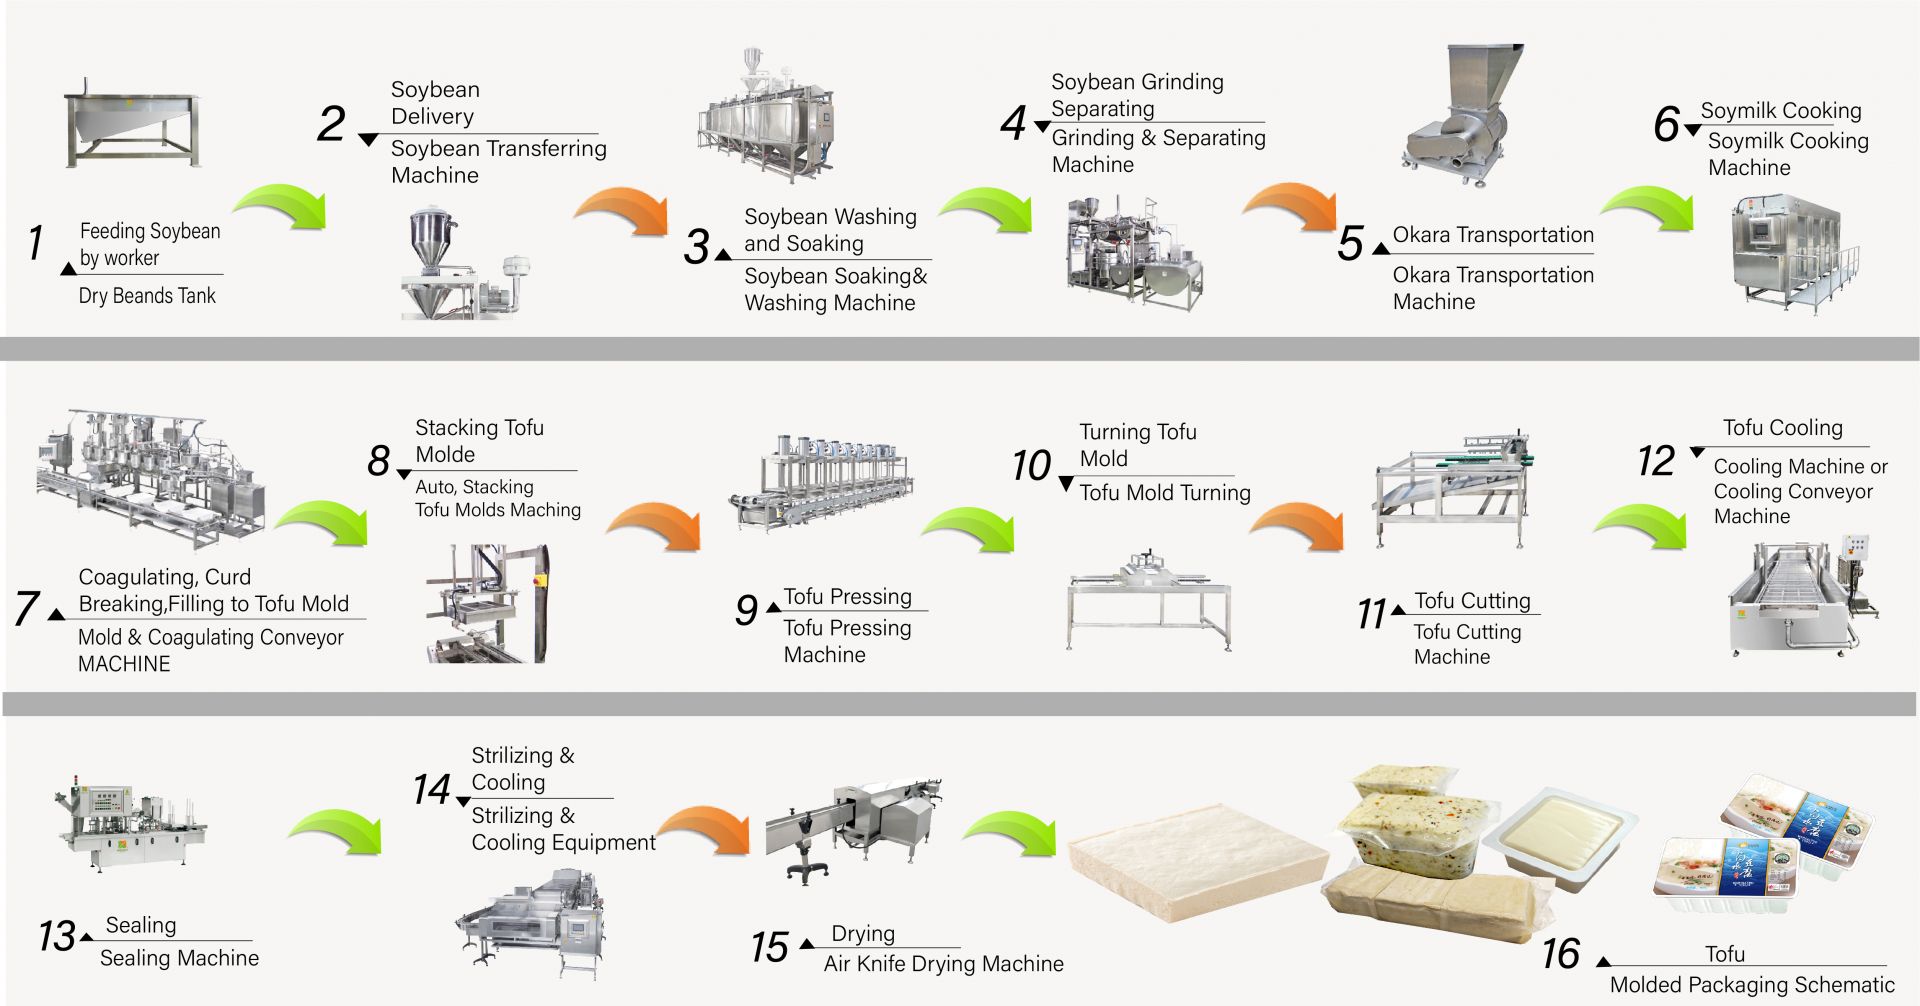 Cum să faci tofu, producție de tofu, fabricarea tofu-ului, procesul de fabricare a tofu-ului, fabricarea tofu-ului, procesul de fabricare a tofu-ului, procesul de tofu, metodă de procesare a tofu-ului, procesul de procesare a tofu-ului, producția de tofu, diagrama de flux a producției de tofu, procesul de producție a tofu-ului, procesul de producție a tofu-ului, mașină automată de tofu, mașină automată de fabricat tofu, mașină comercială de tofu, fabricant ușor de tofu, mașină de tofu prăjit, fabricație industrială de tofu, echipament pentru produse din soia, mașină de fabricat carne de soia, mașină de făcut lapte de soia și tofu, echipament de tofu, fabrică de tofu, mașină de tofu, mașină de tofu de vânzare, producător de mașini de tofu, producător de mașini de tofu, preț mașină de tofu, utilaje pentru tofu, Utilaje și echipamente pentru tofu, fabricant de tofu, mașină de fabricat tofu, echipamente pentru fabricarea tofu, mașină de fabricat tofu, preț mașină de fabricat tofu, producători de tofu, fabricație de tofu, echipamente pentru fabricarea tofu, Fabrică de producție de tofu, uzină de producție de tofu, echipamente de producție de tofu, fabrică de producție de tofu, linie de producție de tofu, prețul liniei de producție de tofu, fabricant de tofu, Mașină de carne vegană, Linie de producție de carne vegană, Mașini și echipamente pentru tofu din legume